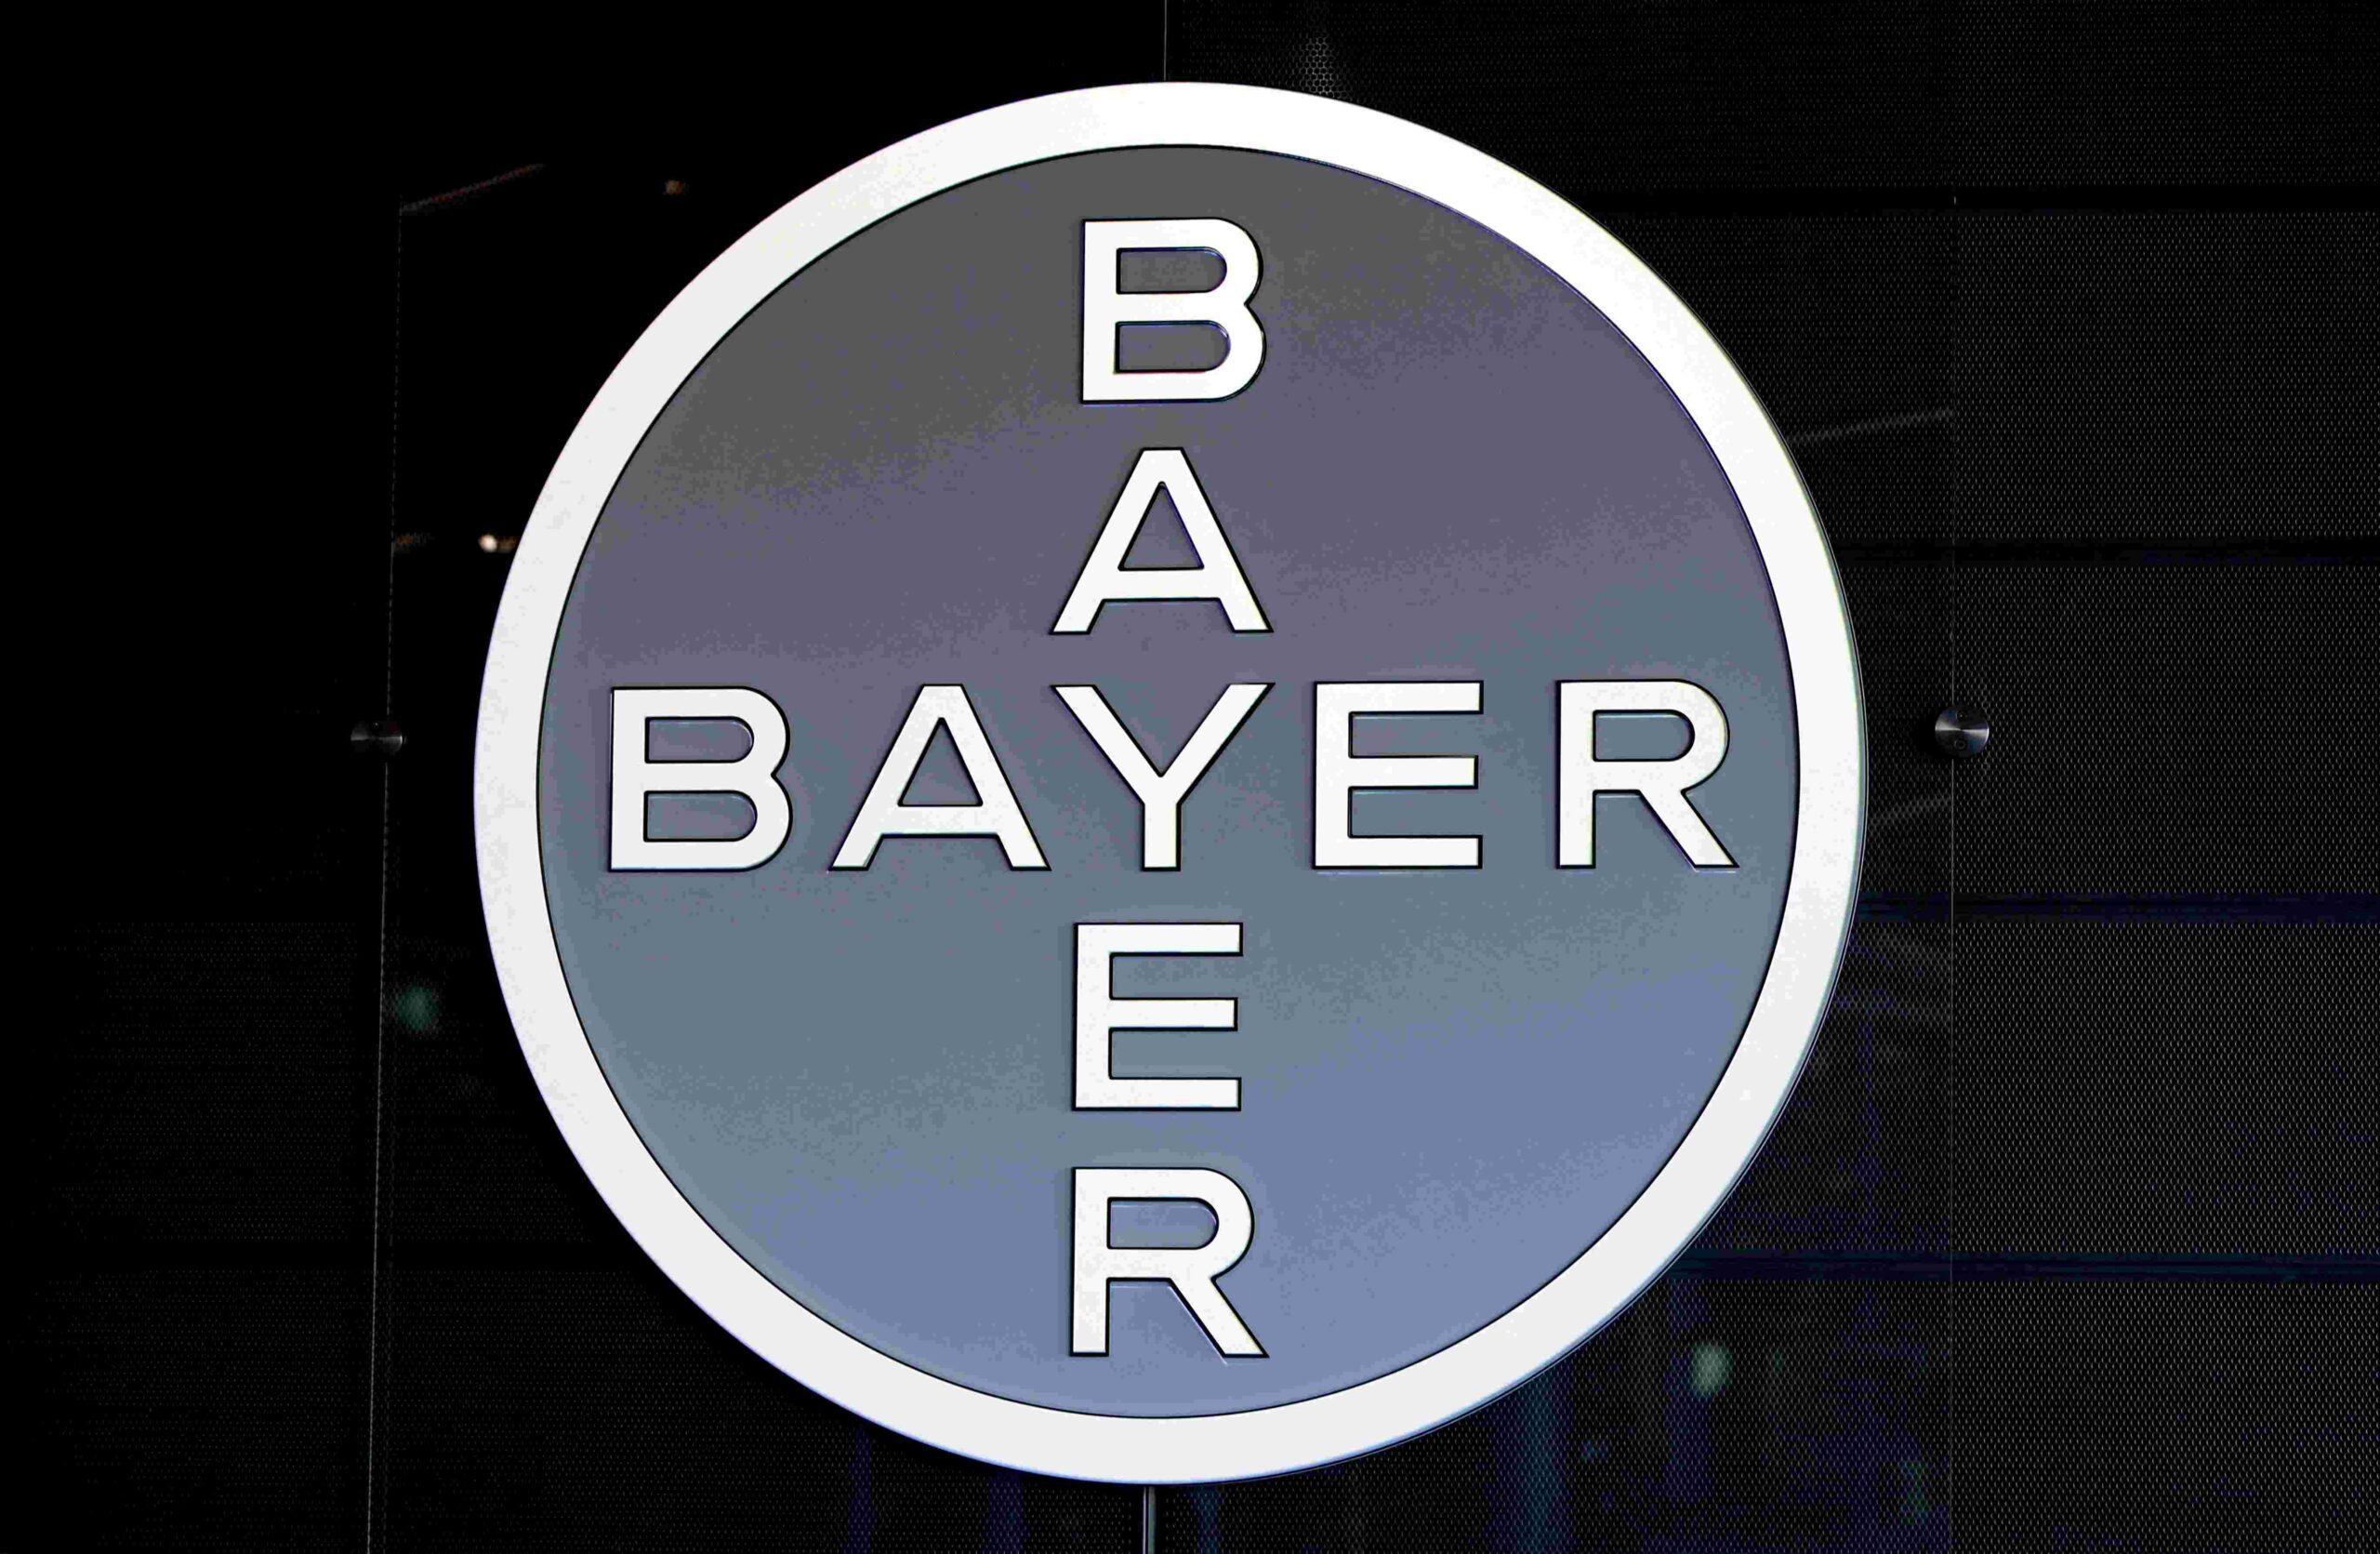 Flash_030824 - Bayer